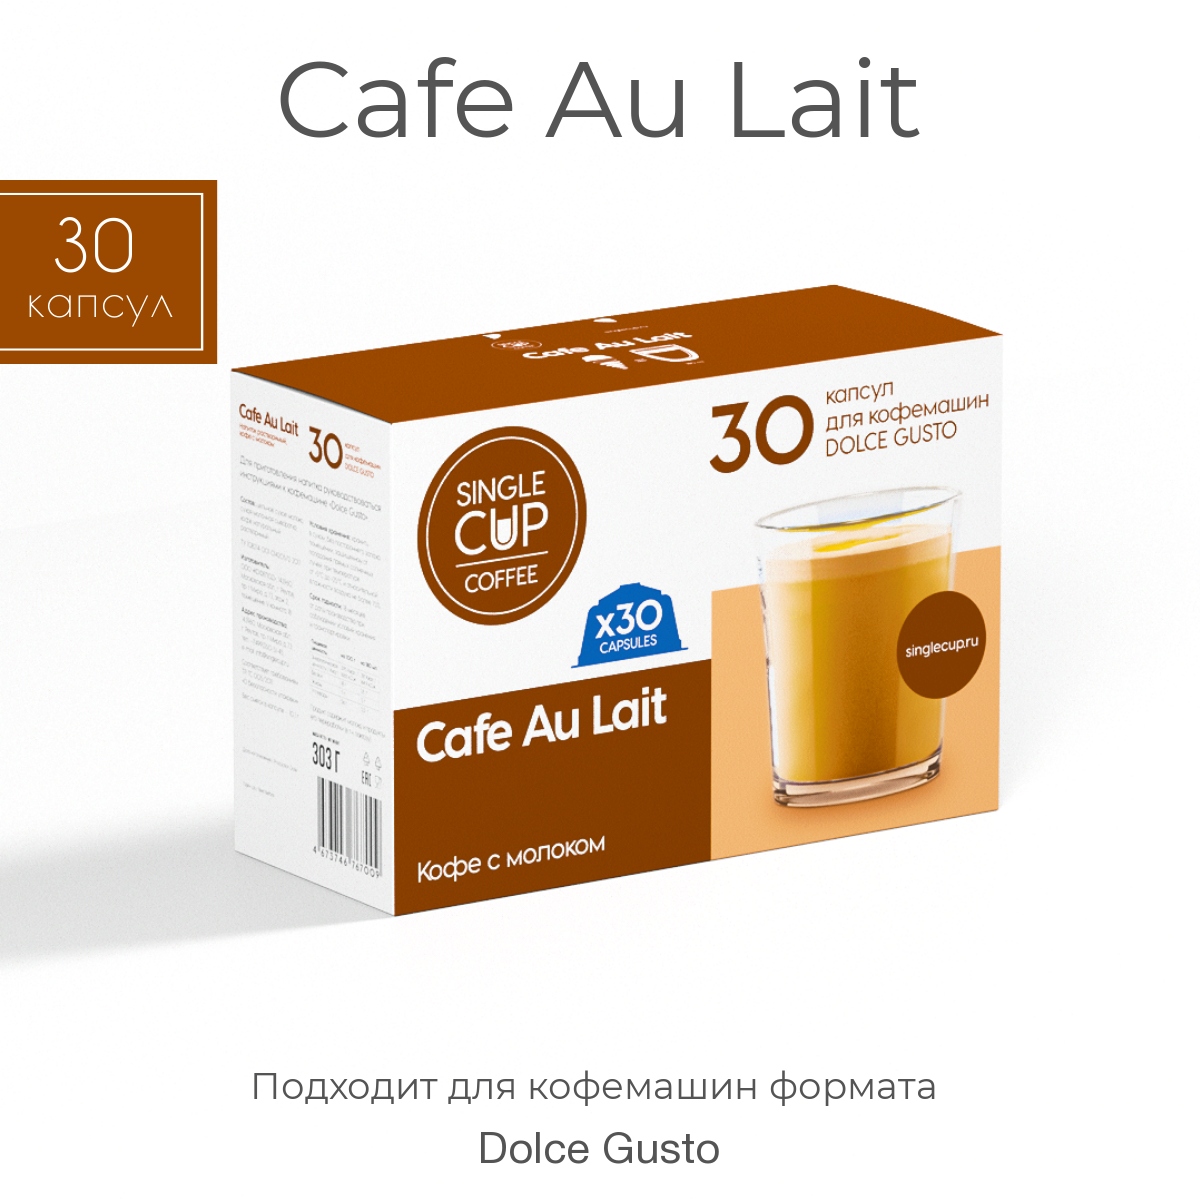 Кофе в капсулах Single Cup Coffee Dolce Gusto формат Cafe au lait, 30 капсул